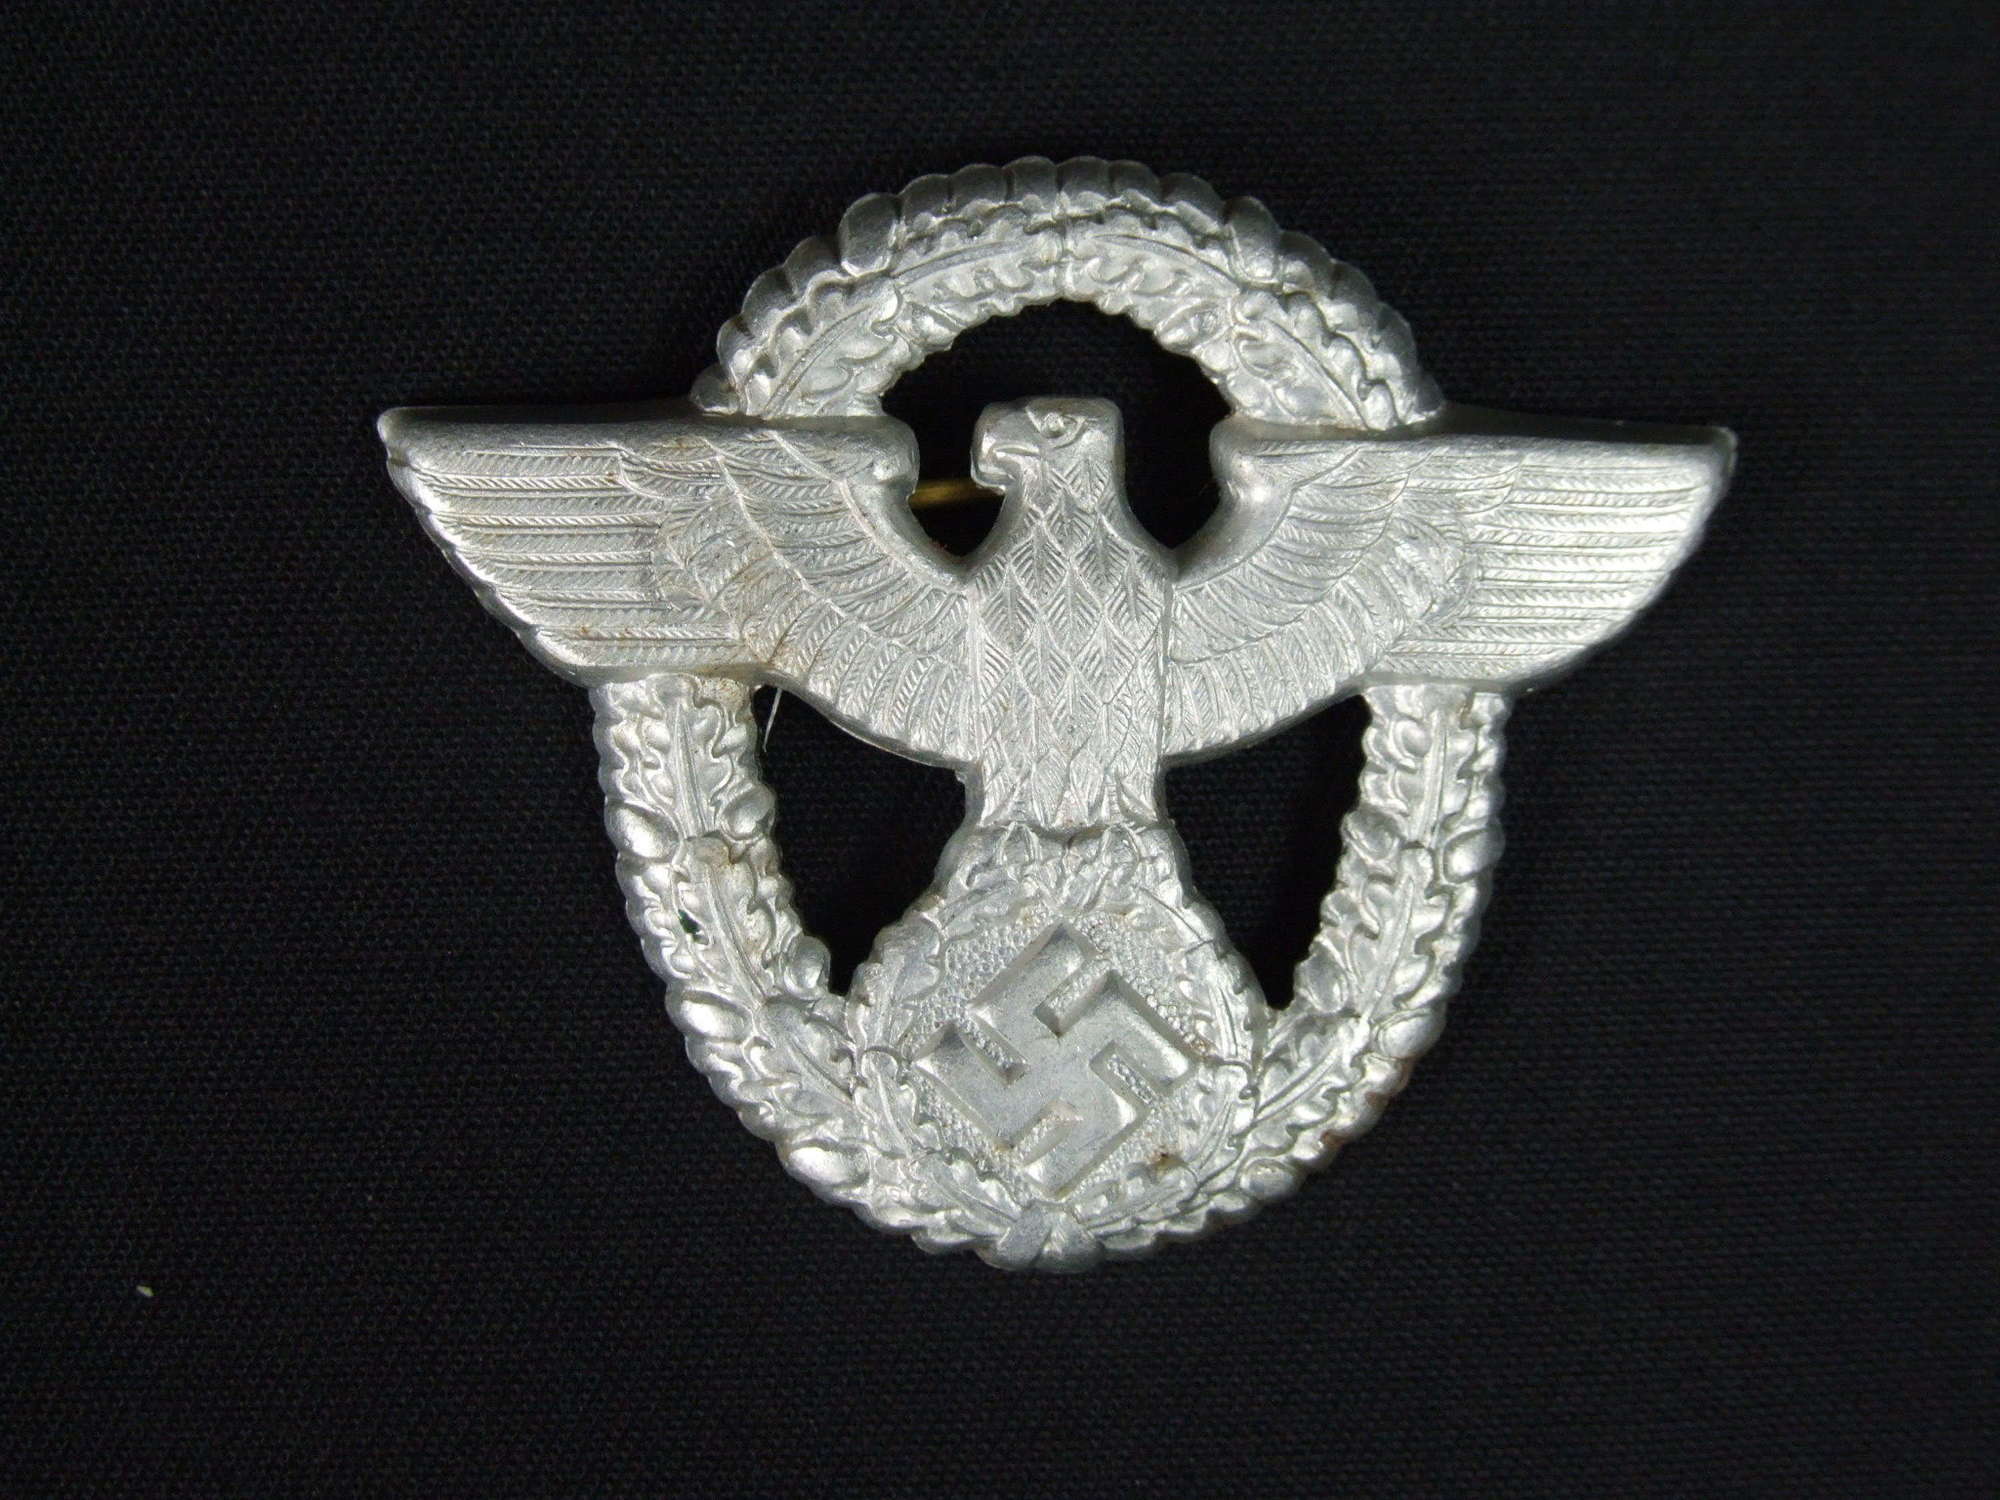 Late War German Police cap badge